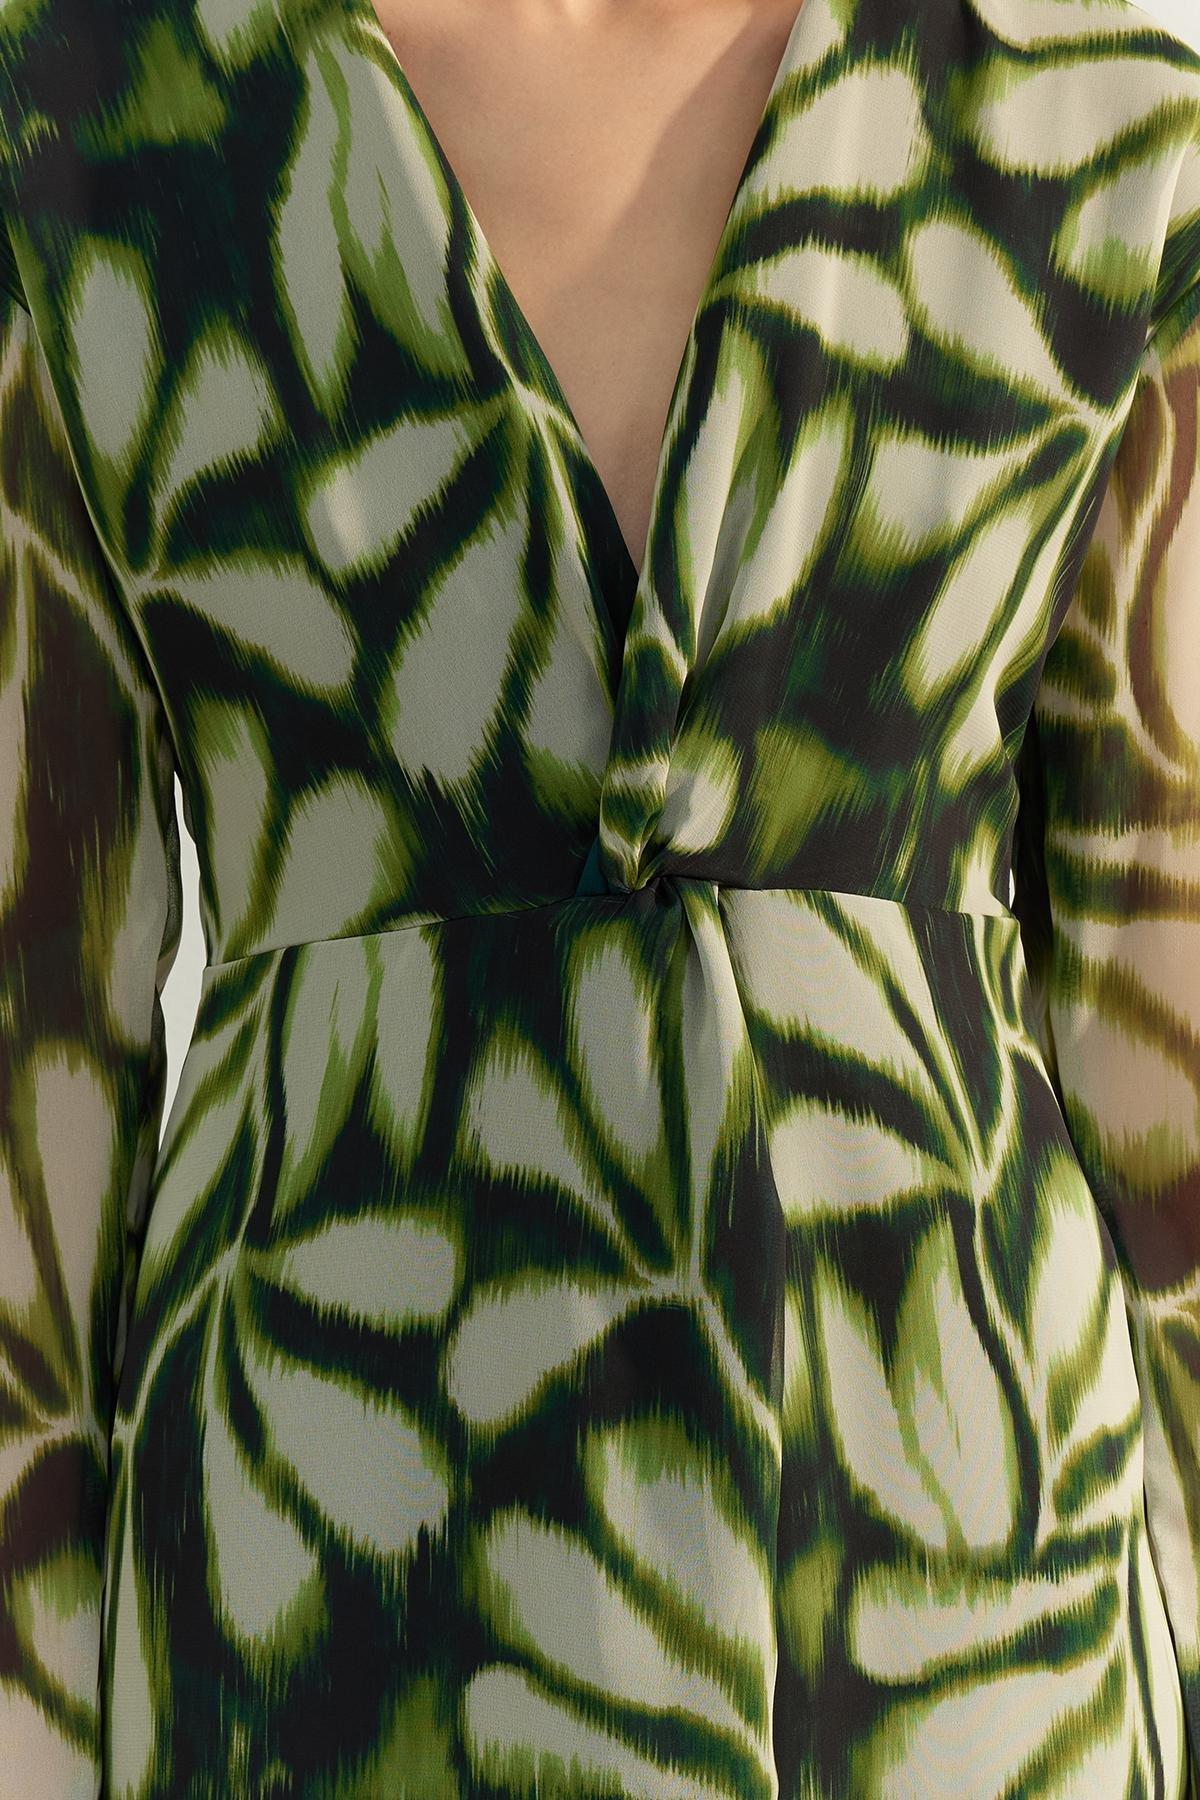 Trendyol - Green Patterned Woven Dress